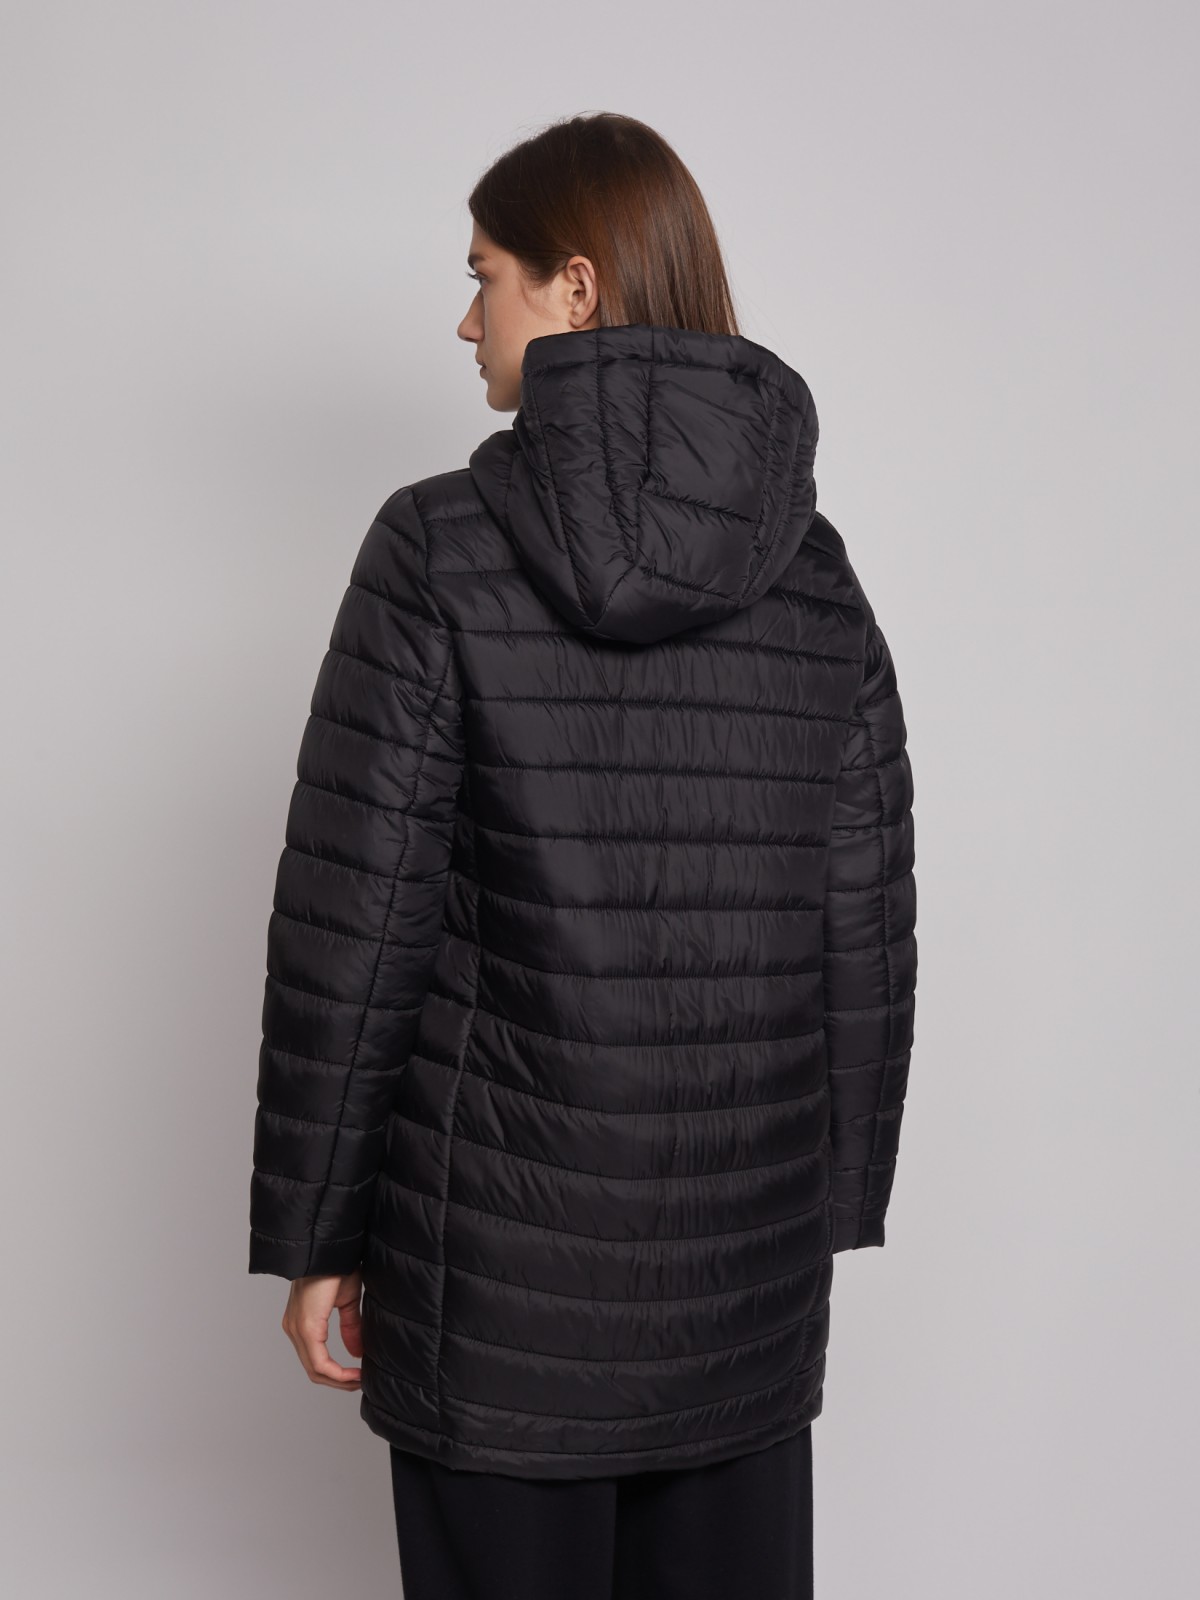 Утеплённое пальто с капюшоном zolla 022335212024, цвет черный, размер XS - фото 5